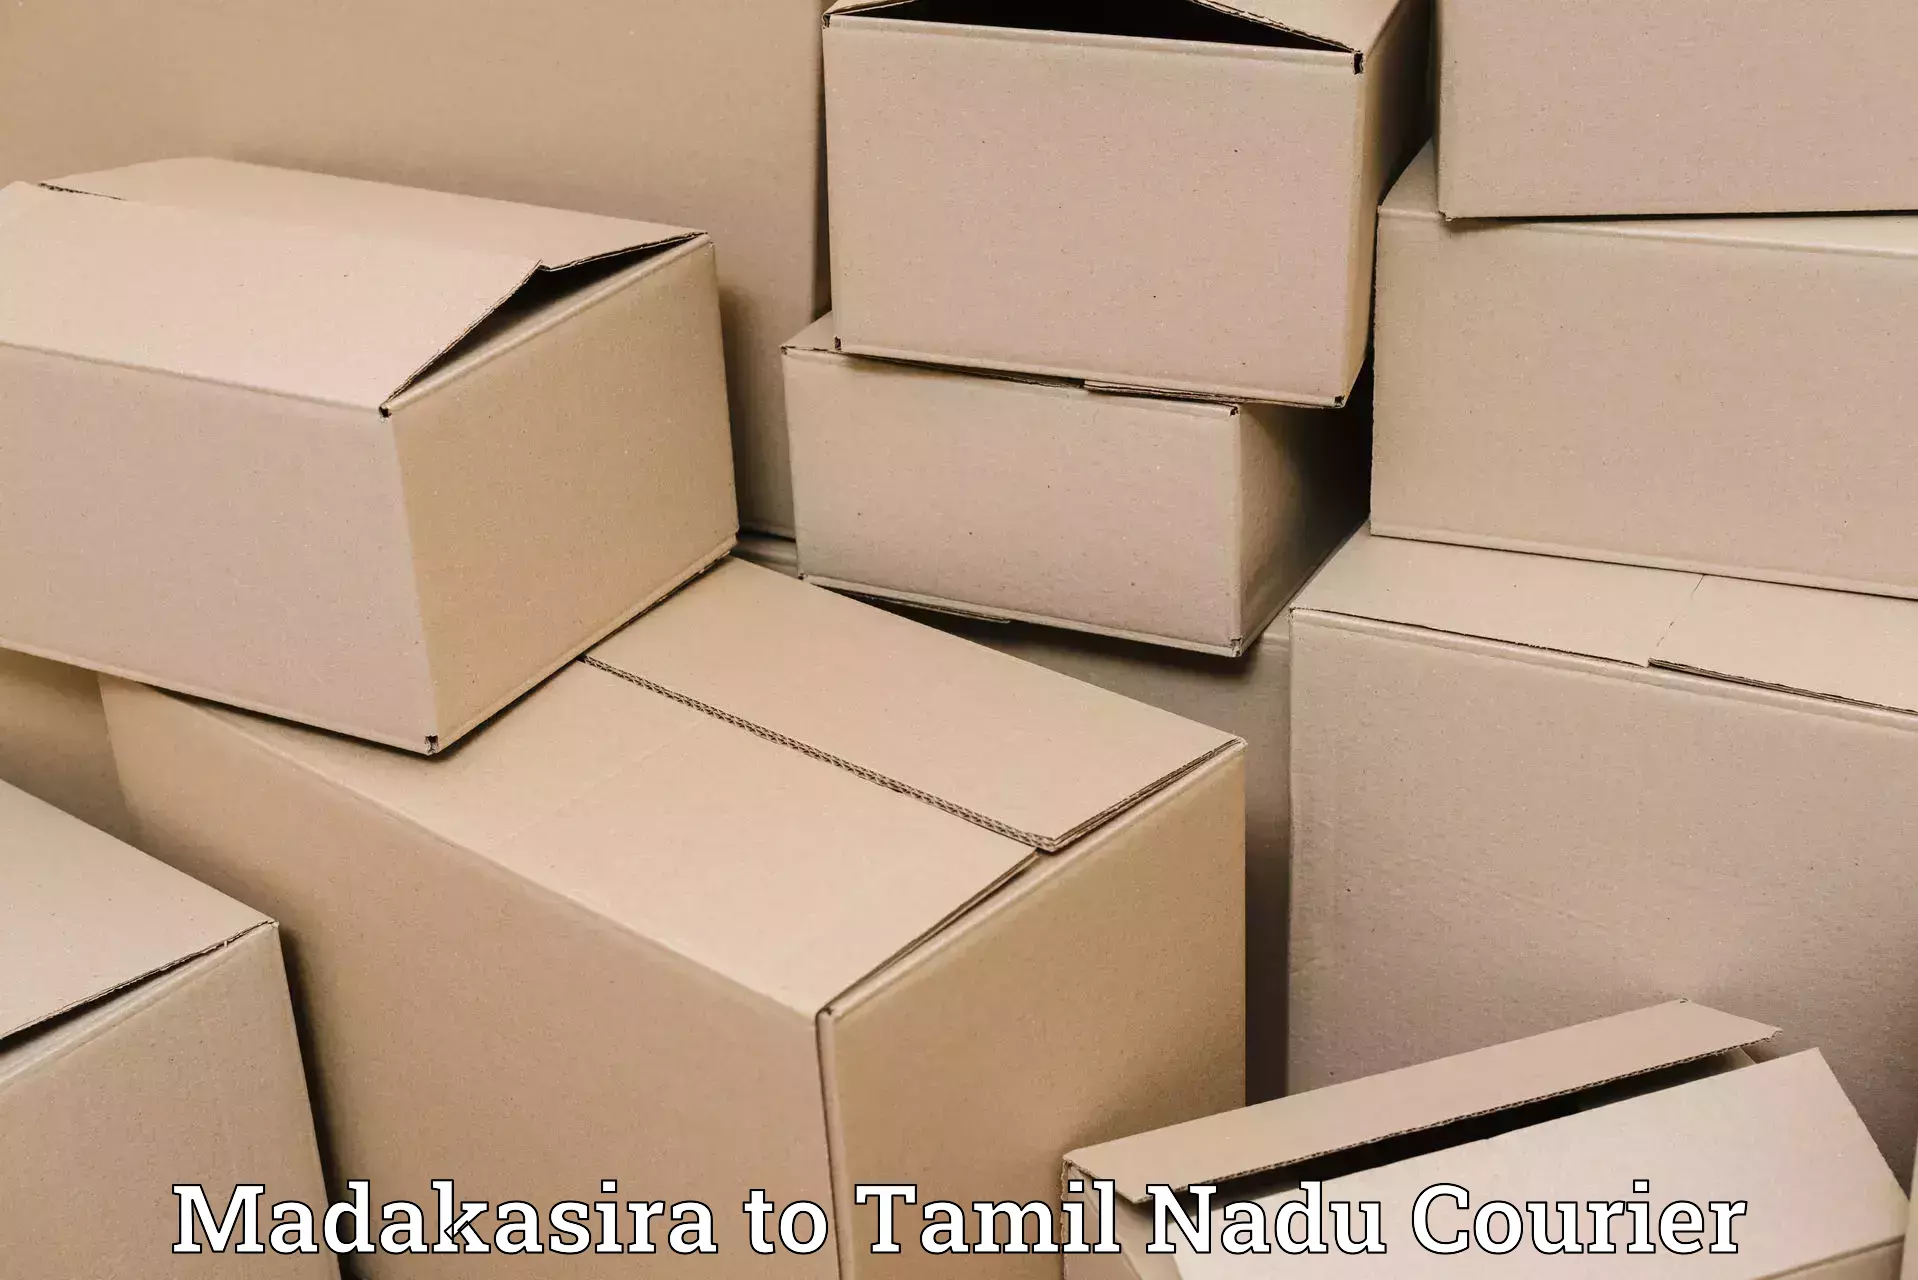 Global logistics network in Madakasira to Tamil Nadu